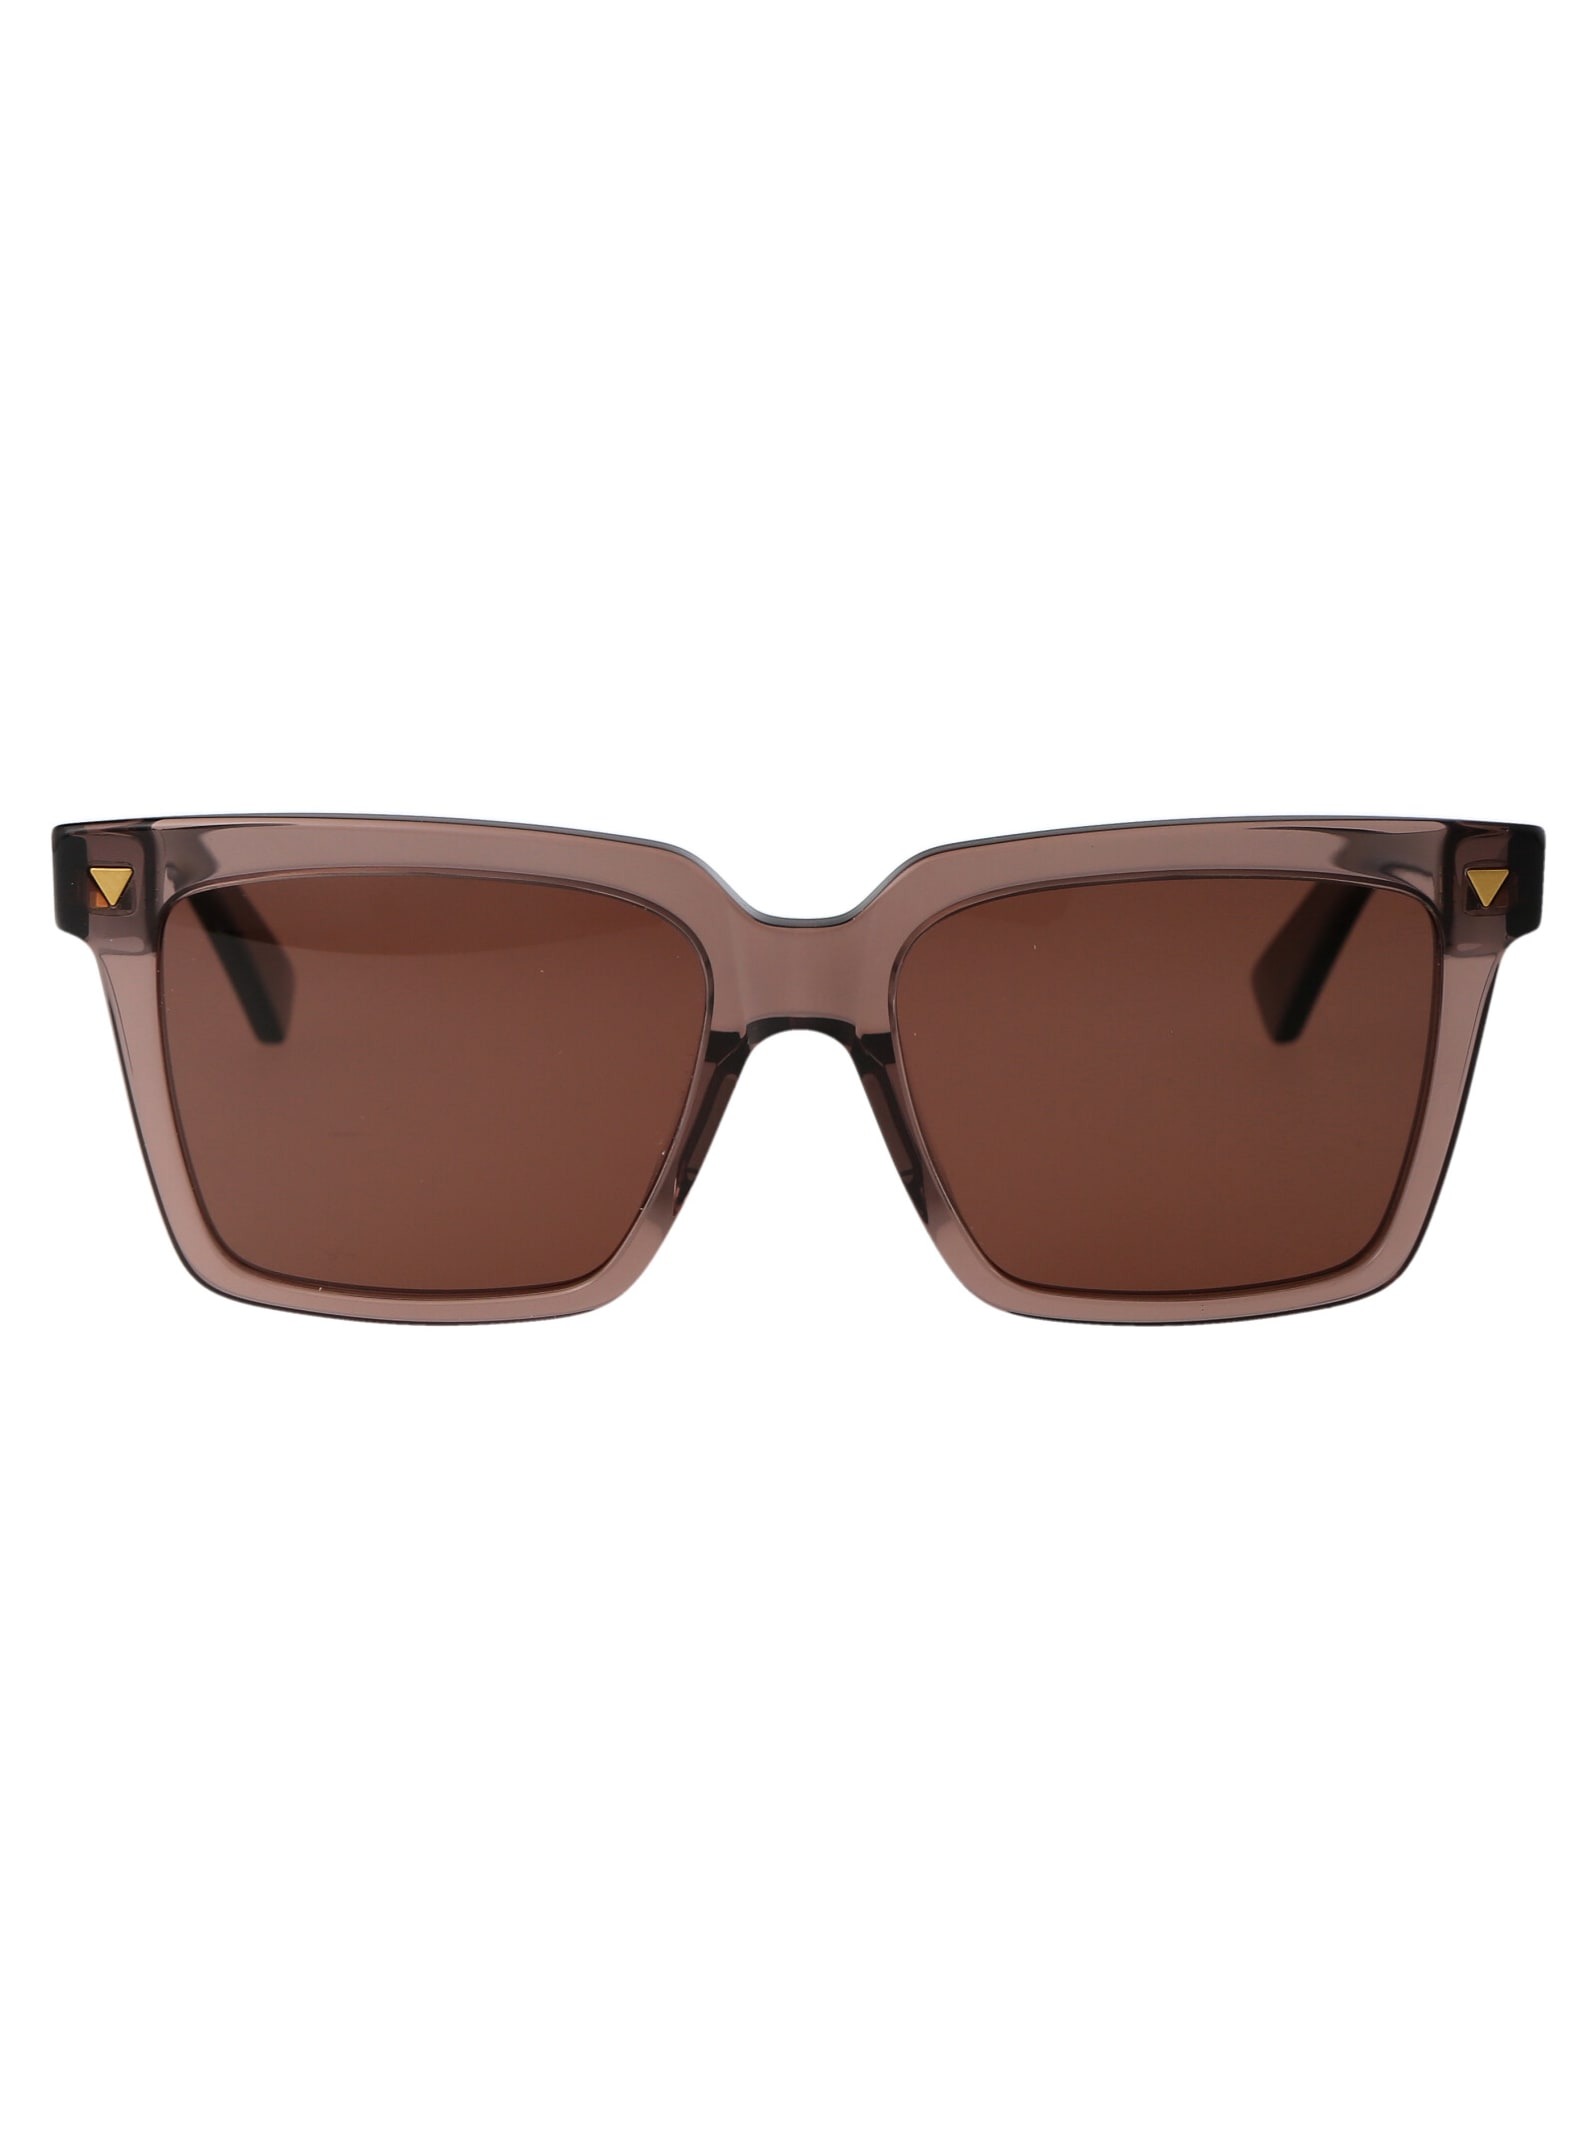 Bv1254s Sunglasses